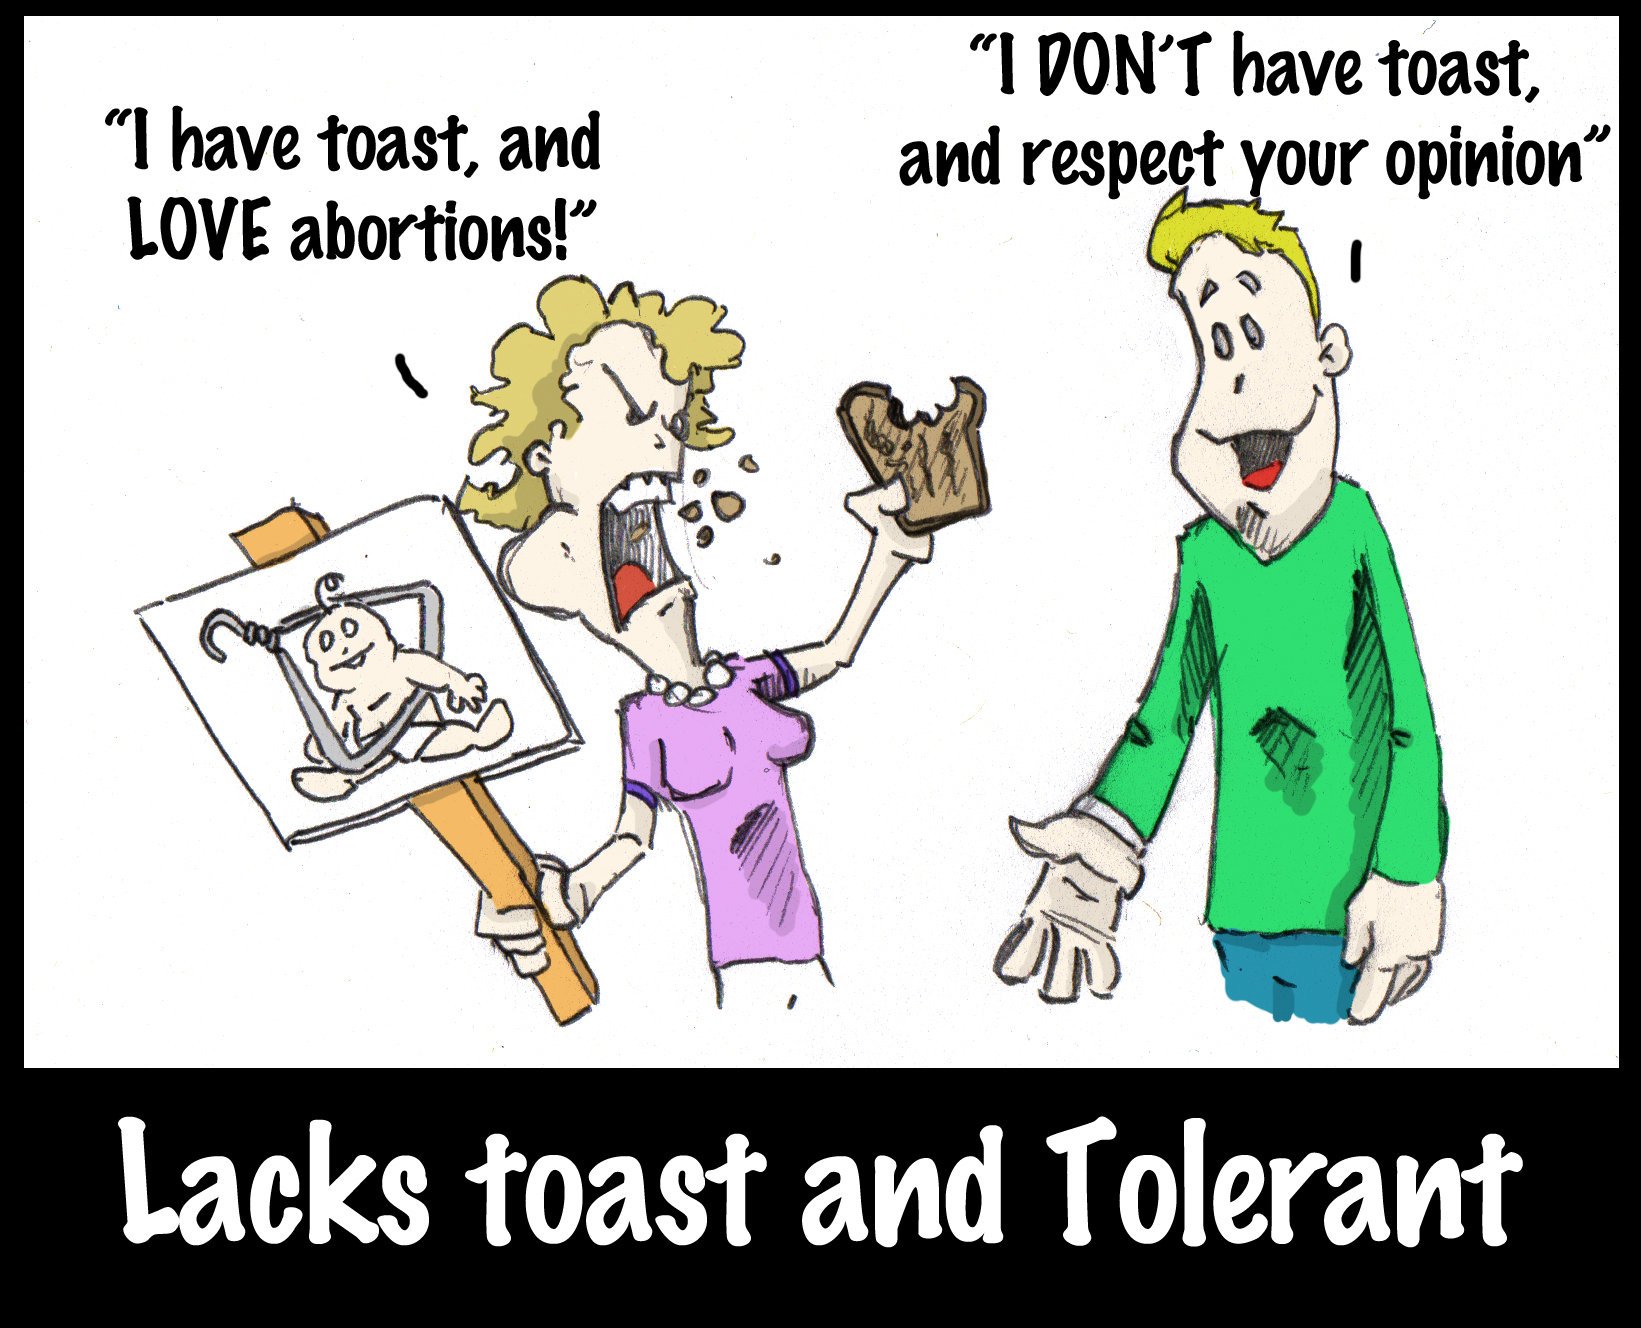 Lacks toast and tolerant